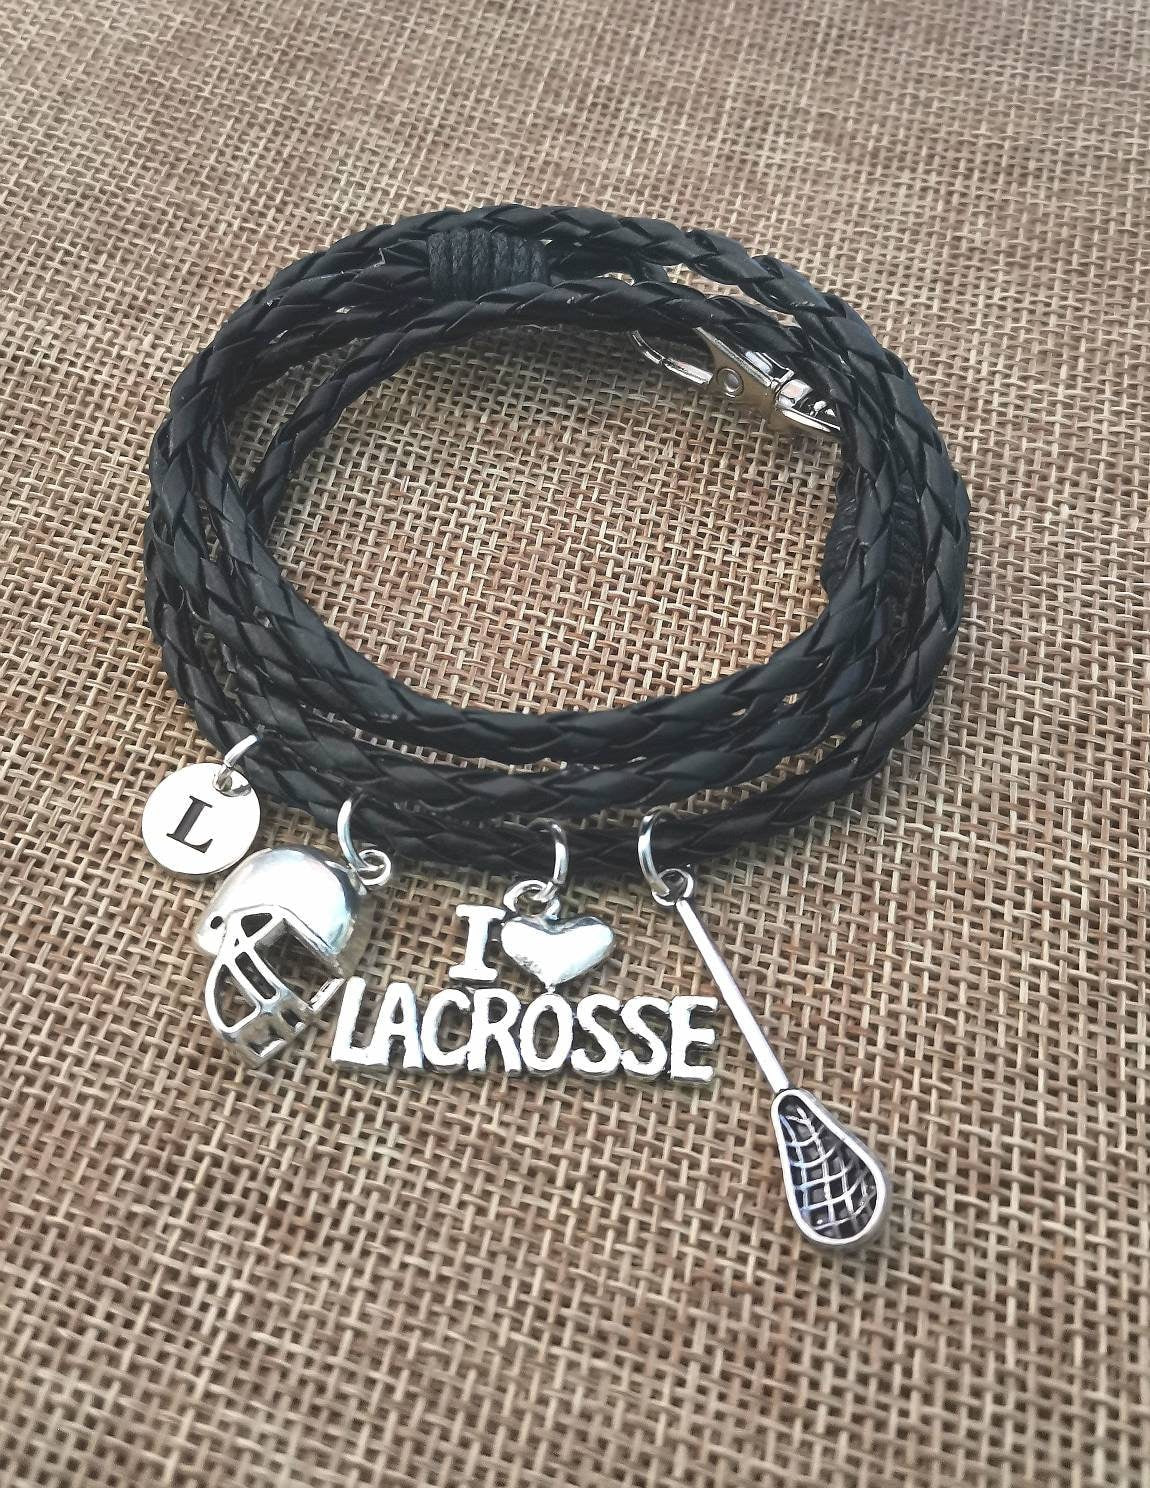 Lacrosse bracelet, Lacrosse Gift, Lacrosse Birthday gift, Personalized Lacrosse Gift, Lacrosse Present, Coach, Player, Fan, Sports, Team